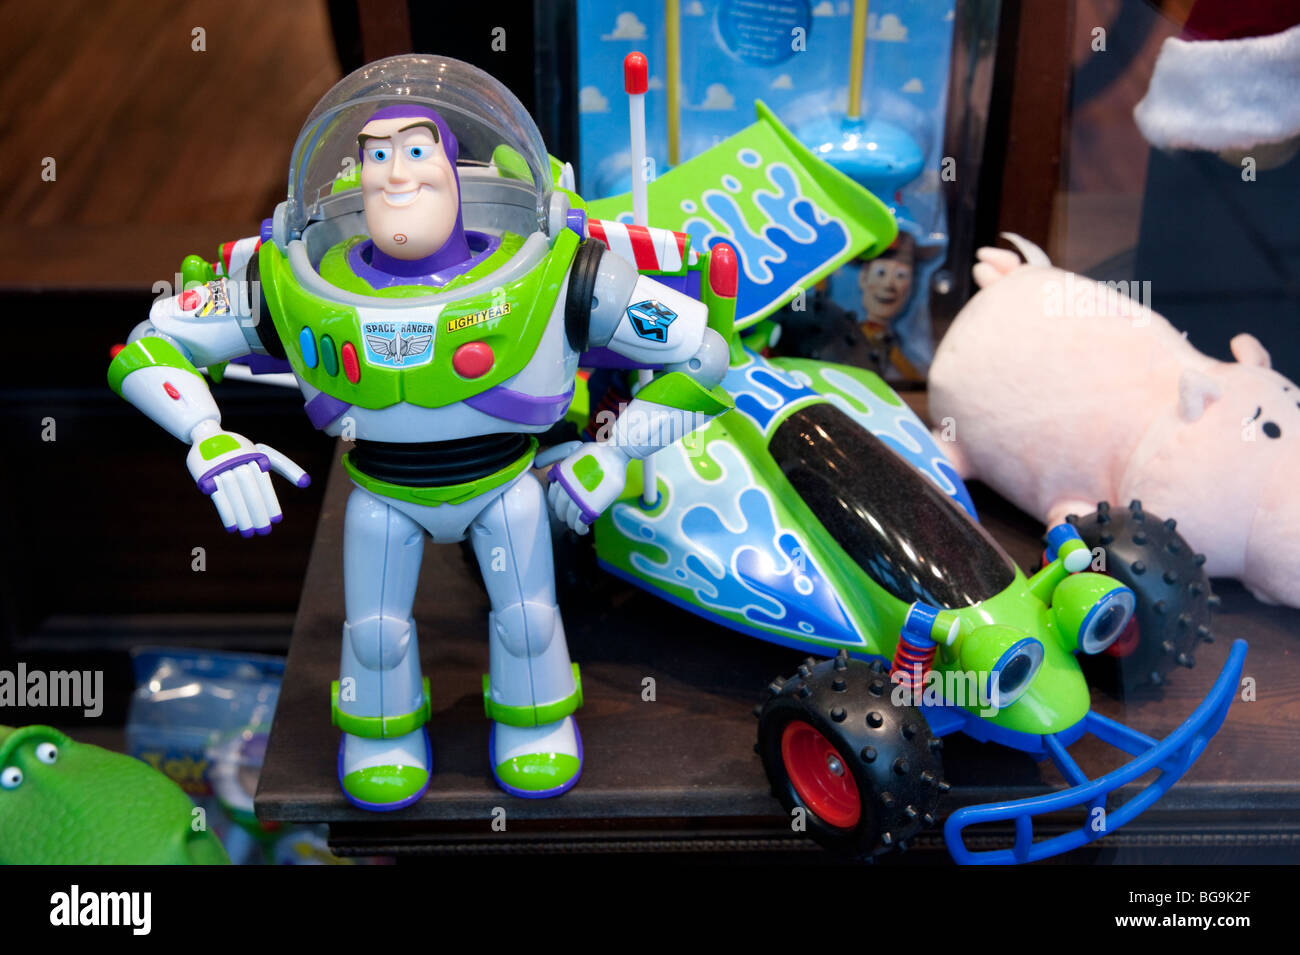 Buzz Lightyear juguetes en los escaparates de las tiendas, Inglaterra, Gran Bretaña, REINO UNIDO Foto de stock